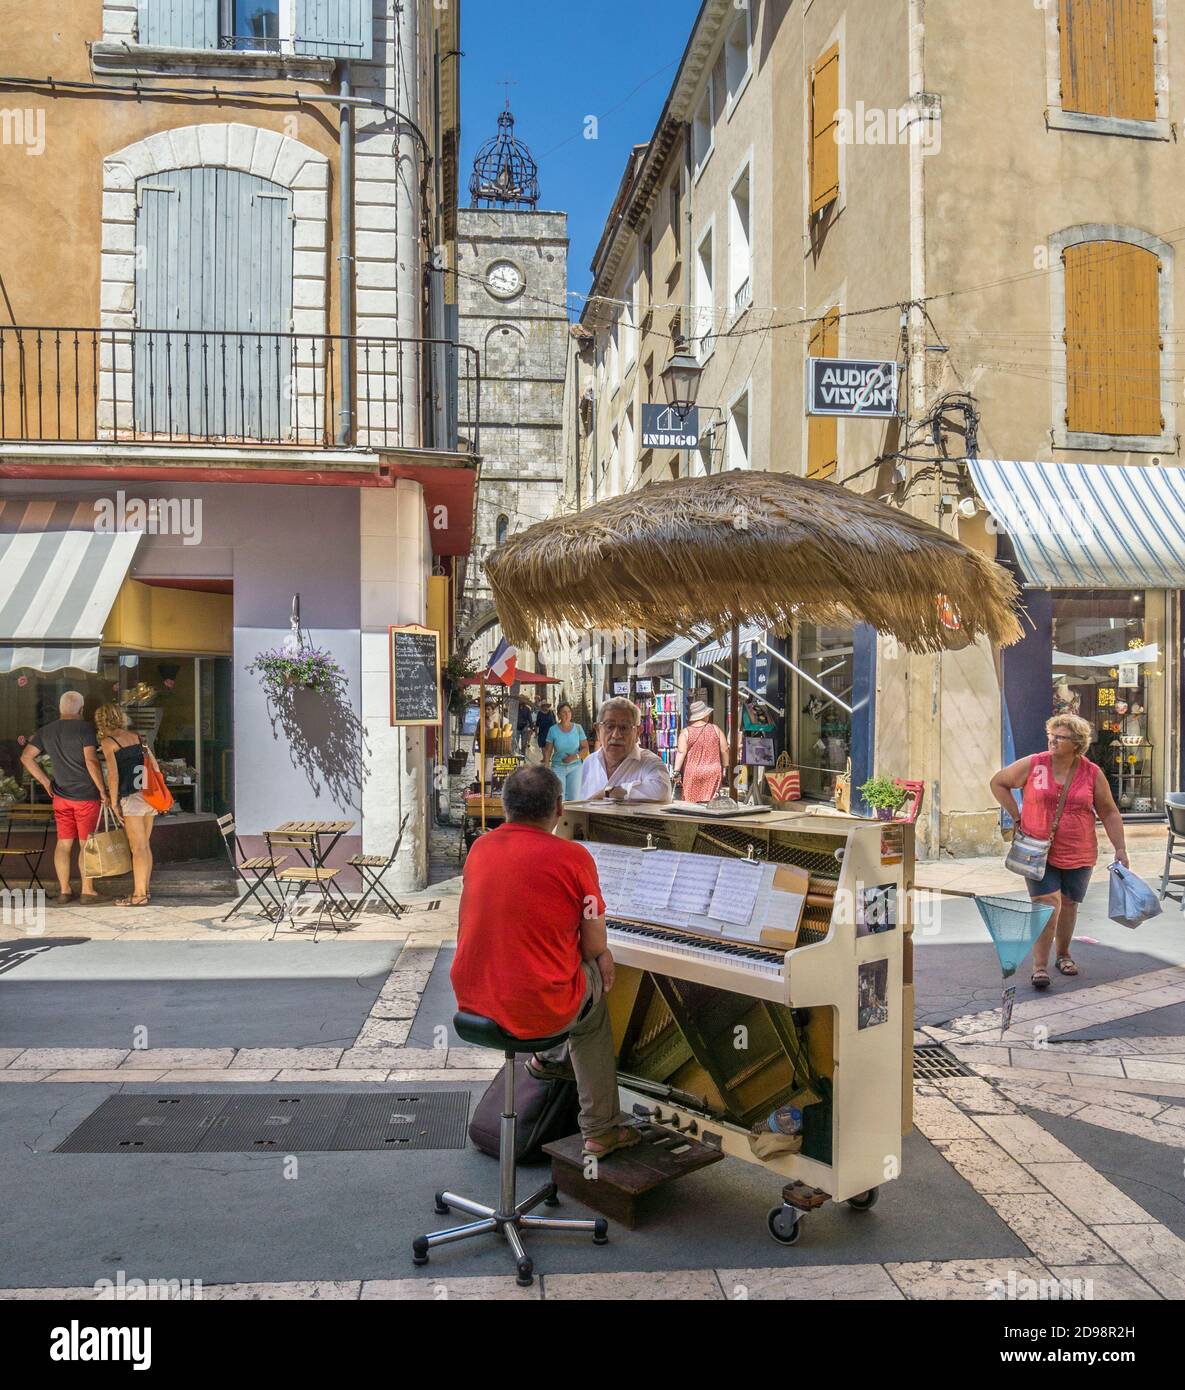 Pianiste sur la place du Postel dans l'ancienne ville Luberon d'Apt, département du Vaucluse, Provence-Alpes-Côte d'Azur, Sud de la France Banque D'Images